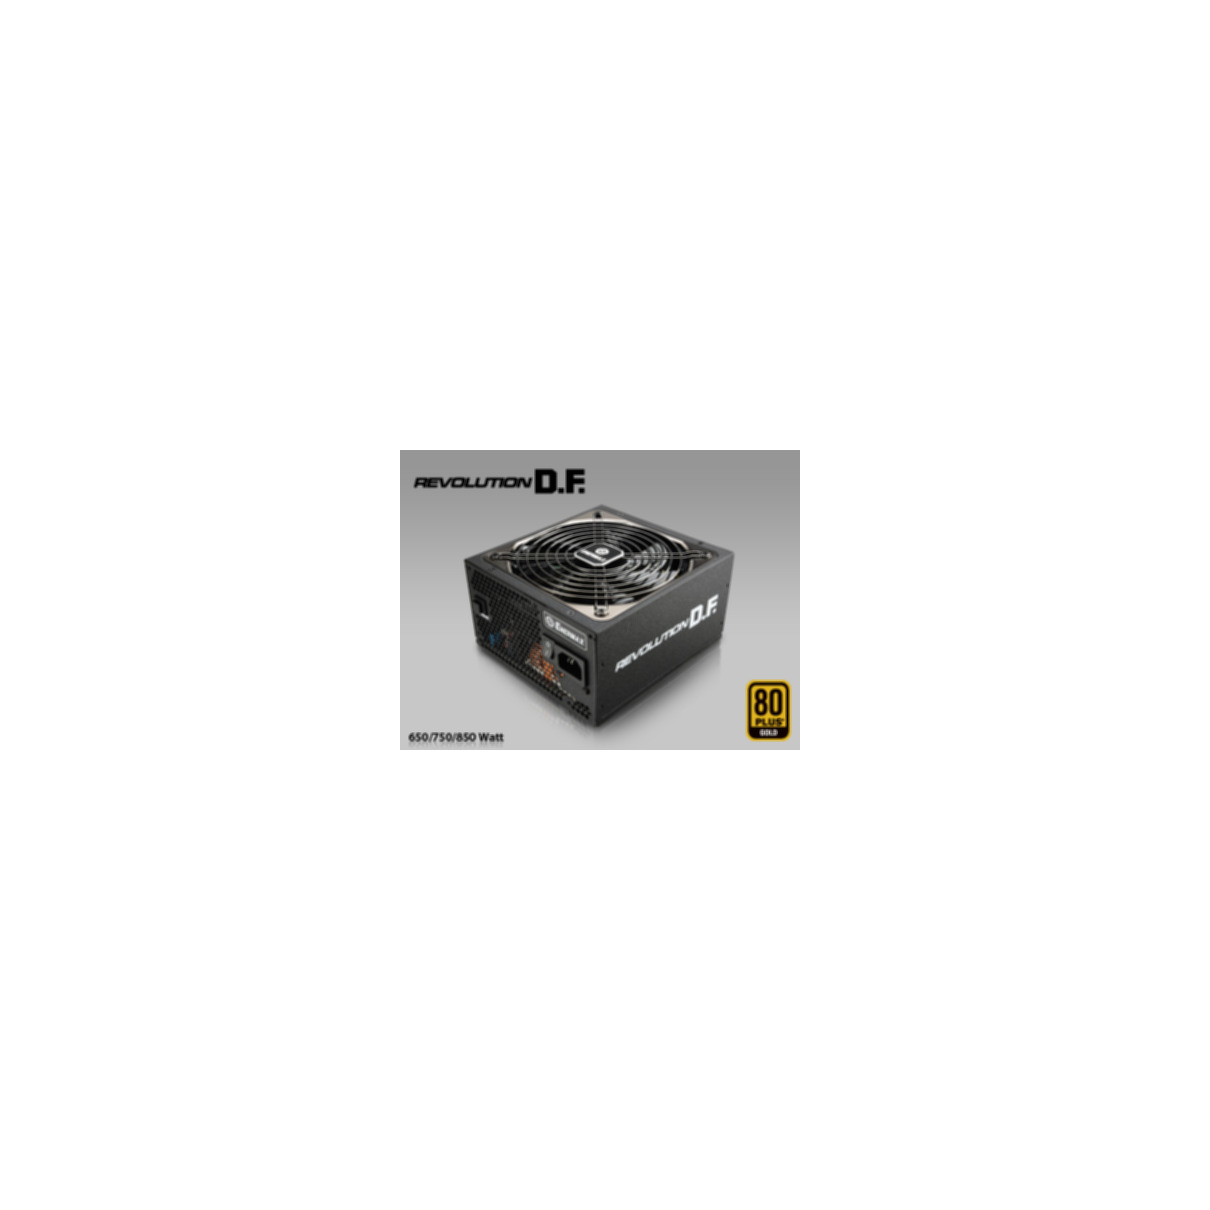 D.F. ErP Watt ENERMAX PC 3, Netzteil 750 617/2013 Revolution 6, 2014 ErP Lot Lot 2013 80 PLUS® Gold,